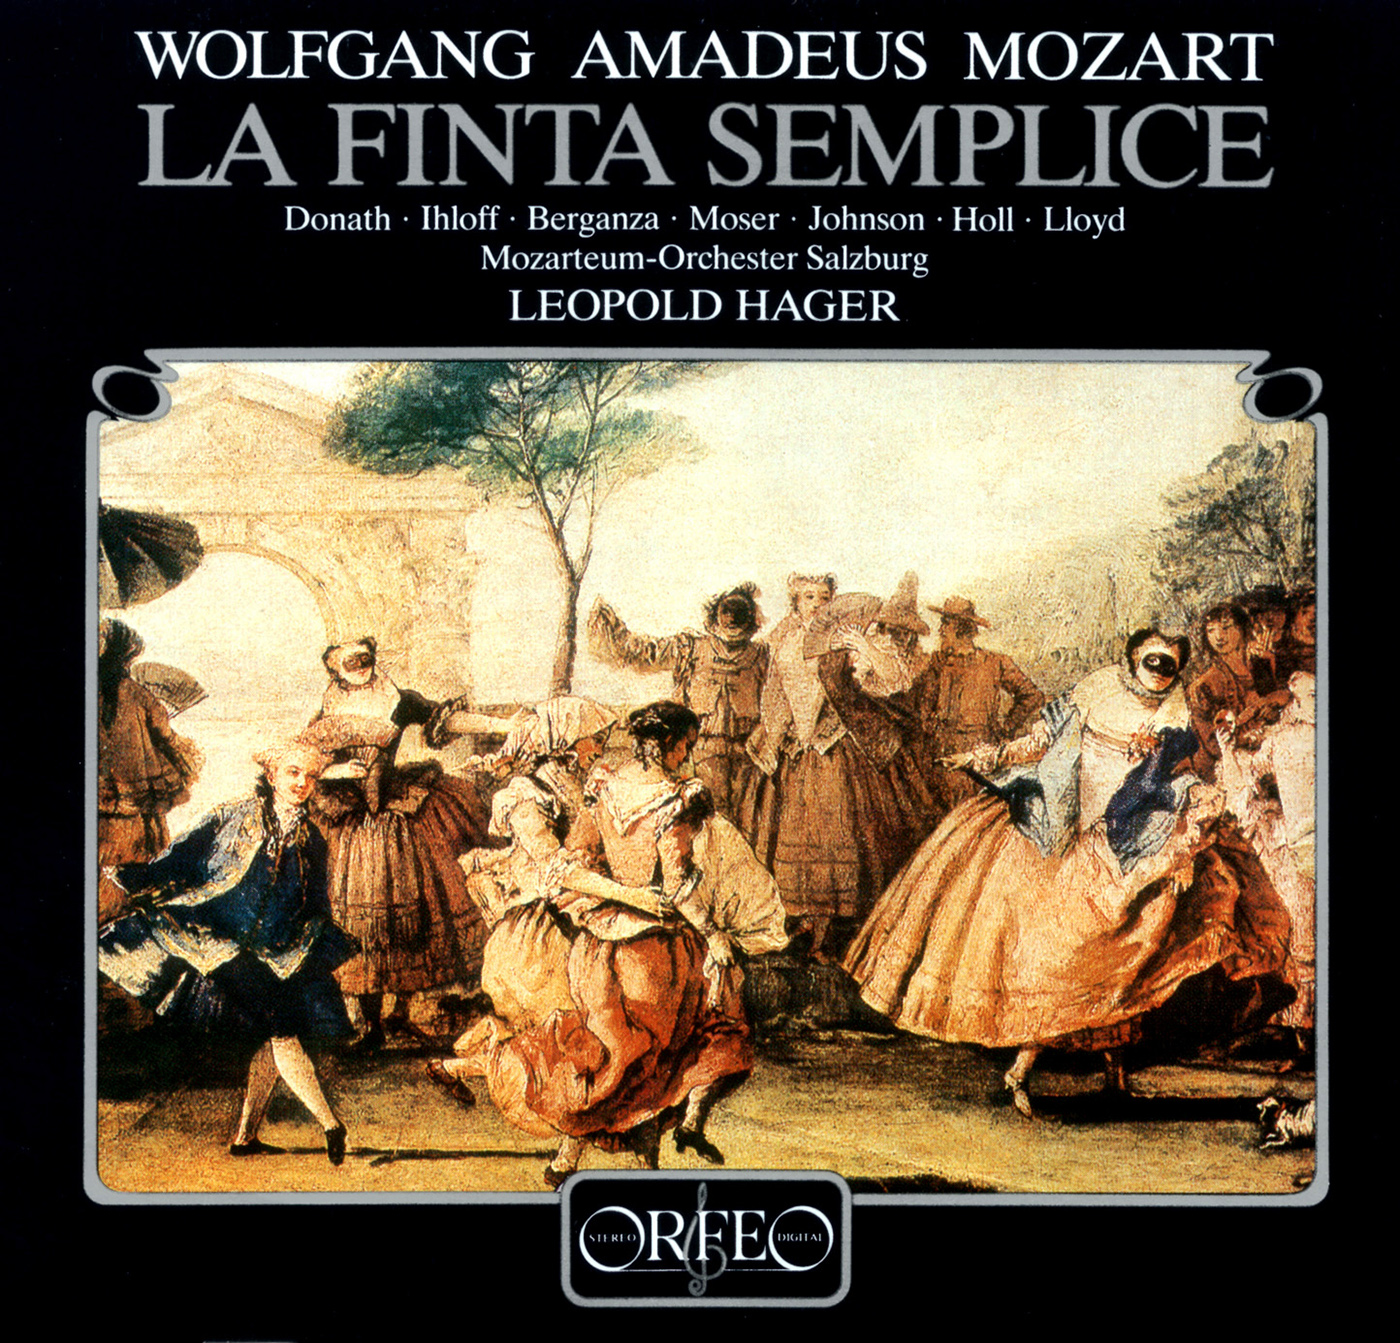 MOZART, W.A.: Finta semplice (La) [Opera] (Donath, Ihloff, Berganza, Moser, Rolfe-Johnson, Holl, Lloyd, Salzburg Mozarteum Orchestra, Hager)